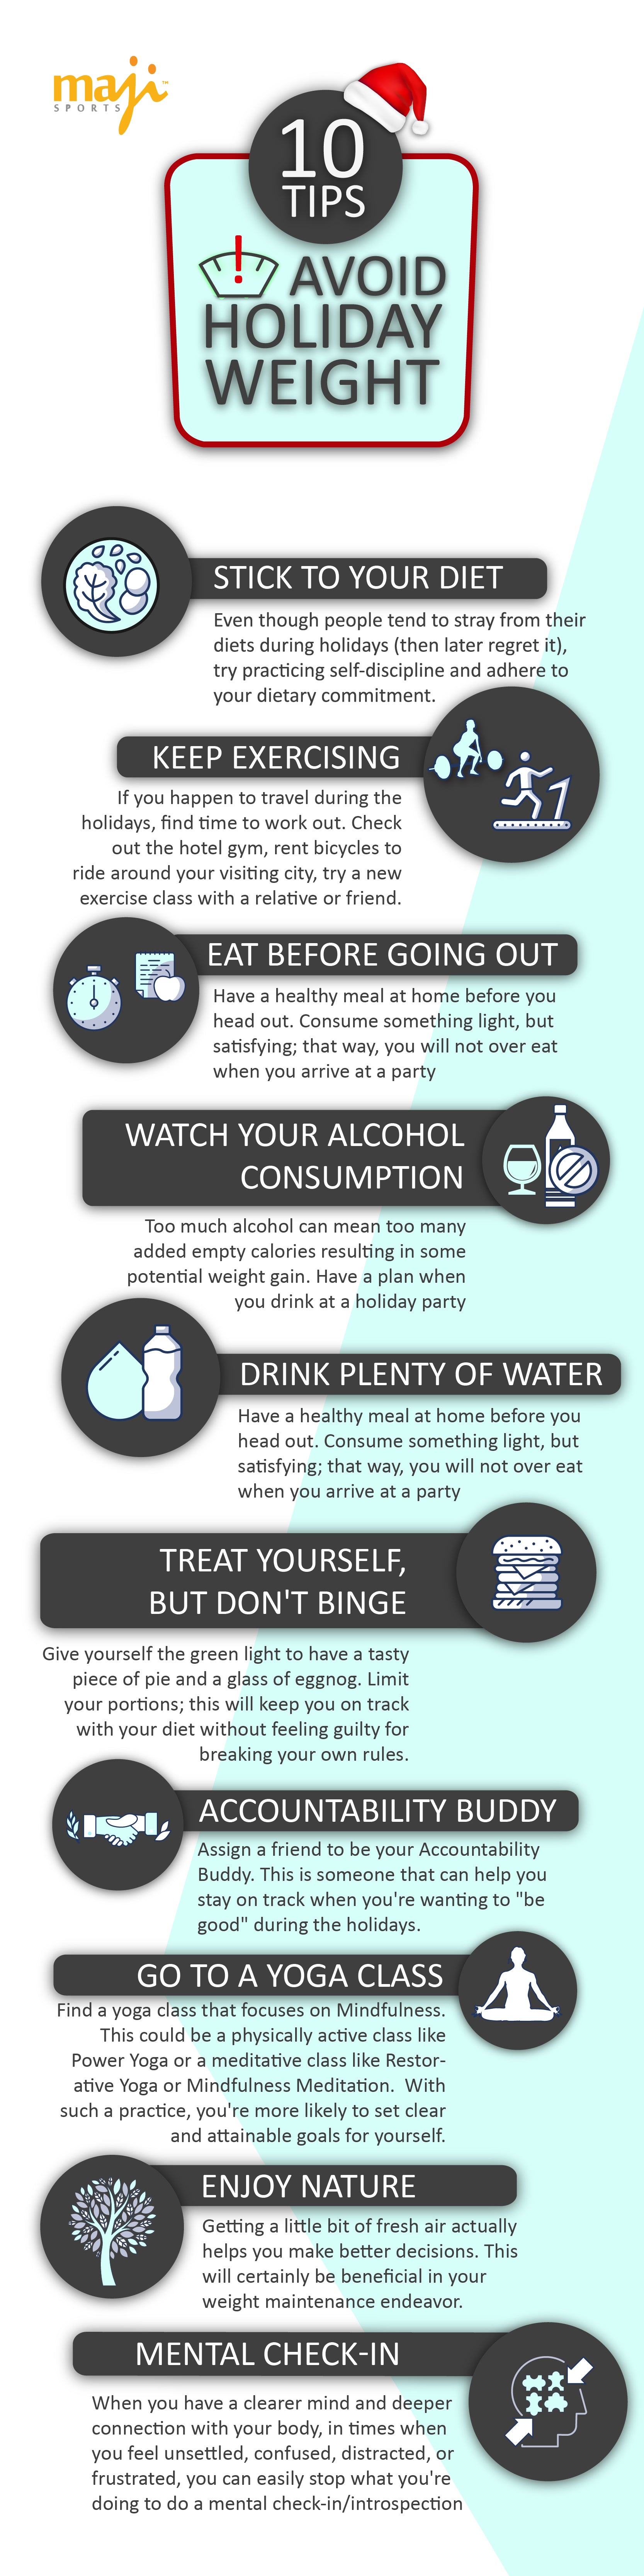 10 Tips - Avoid Holiday Weight - majisports